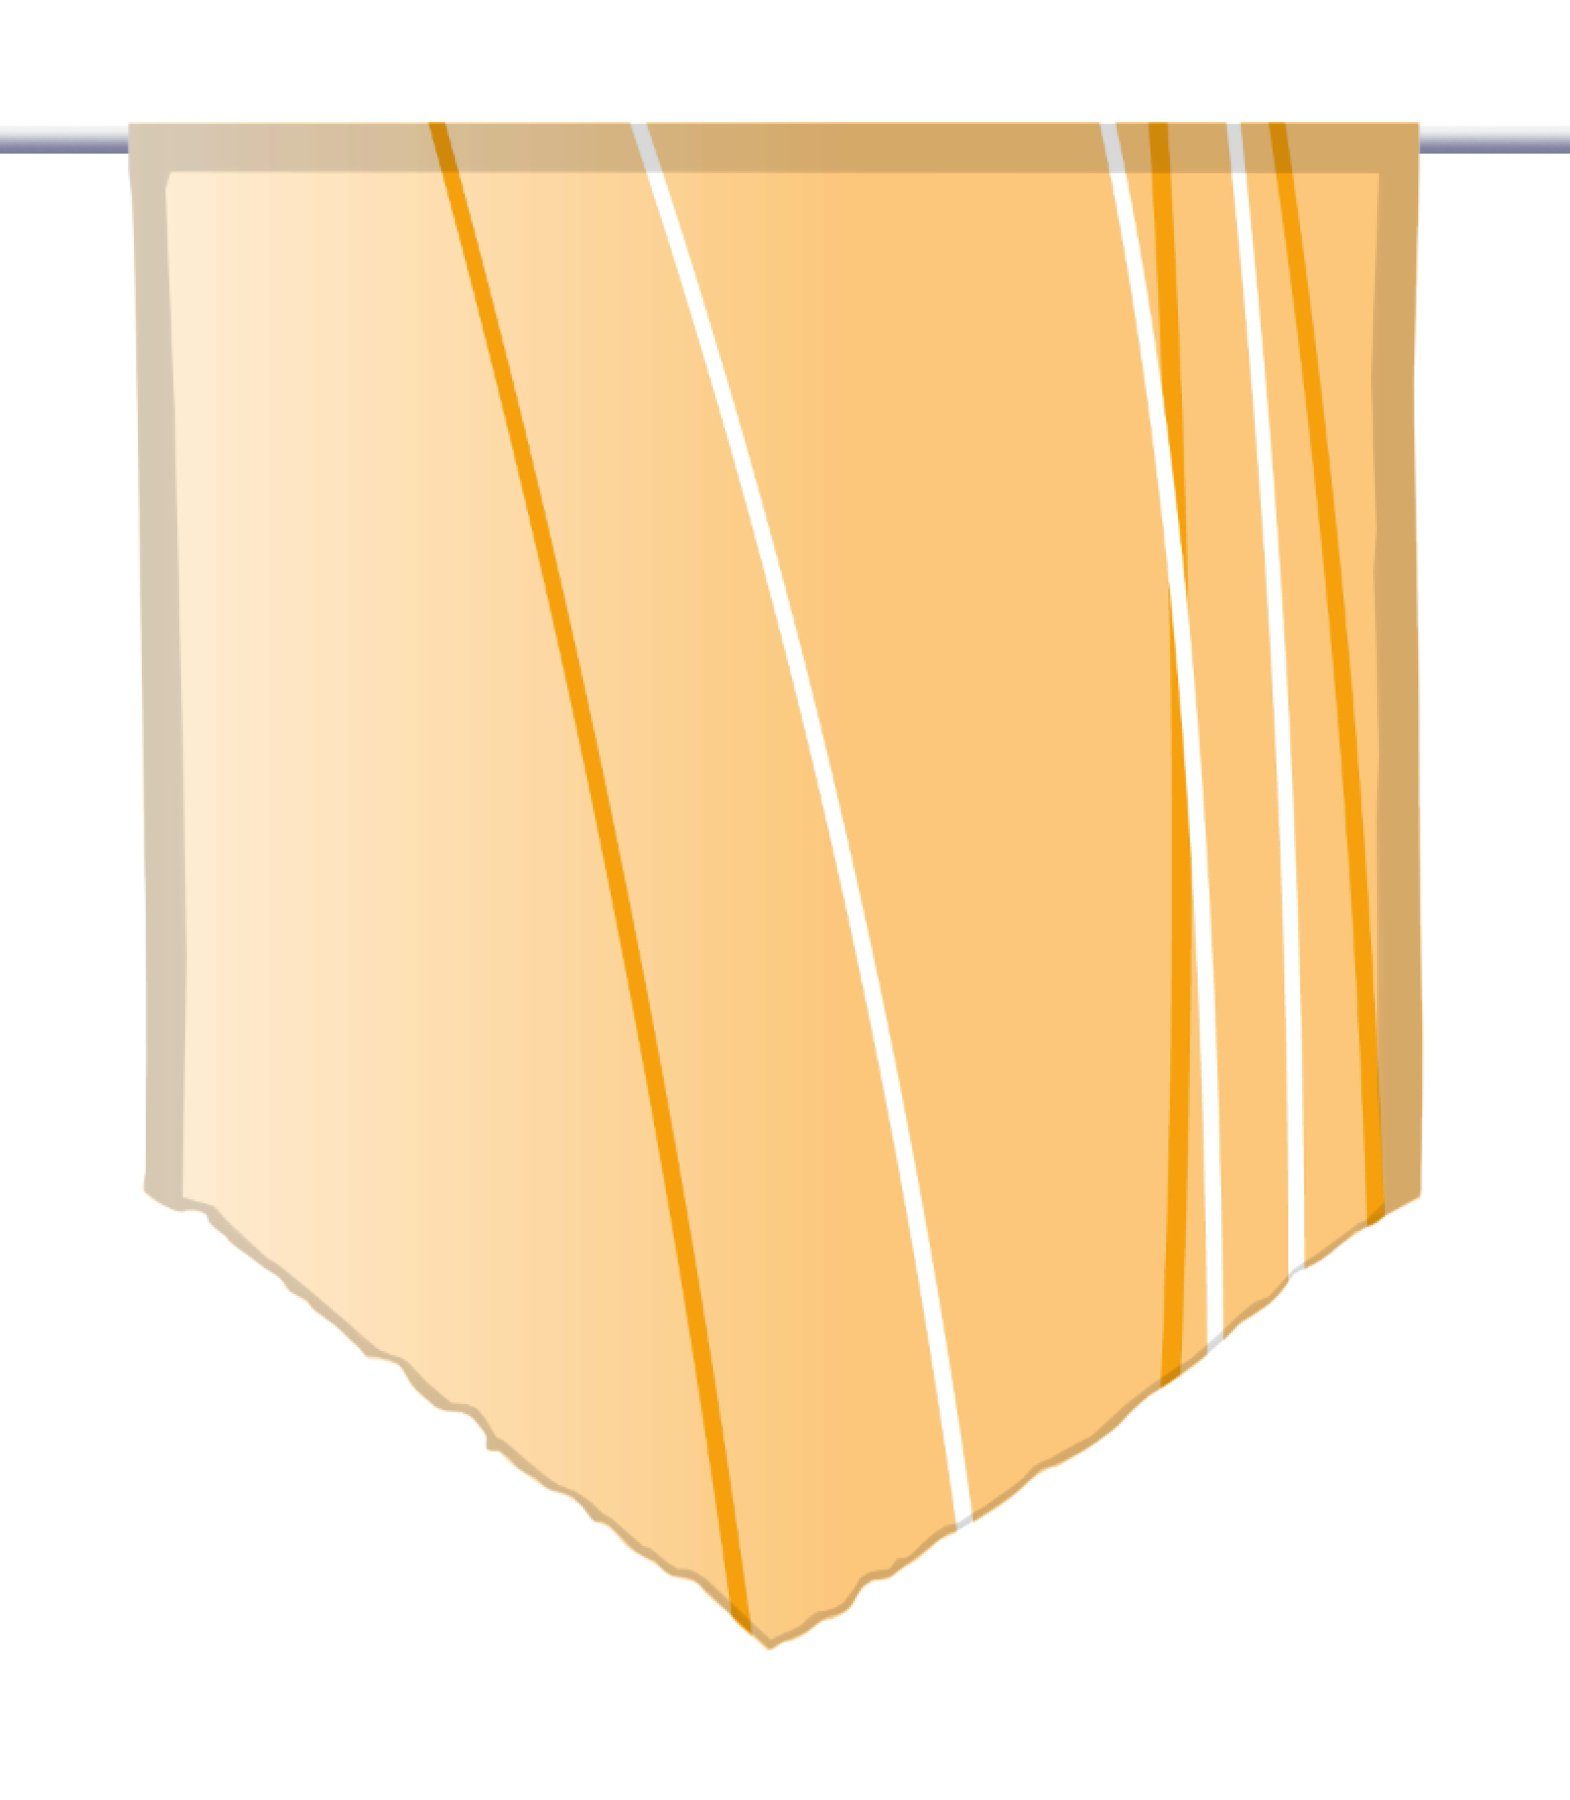 Scheibenhänger rechts gardinen-for-life dark spitz, Scheibengardine orange Linea